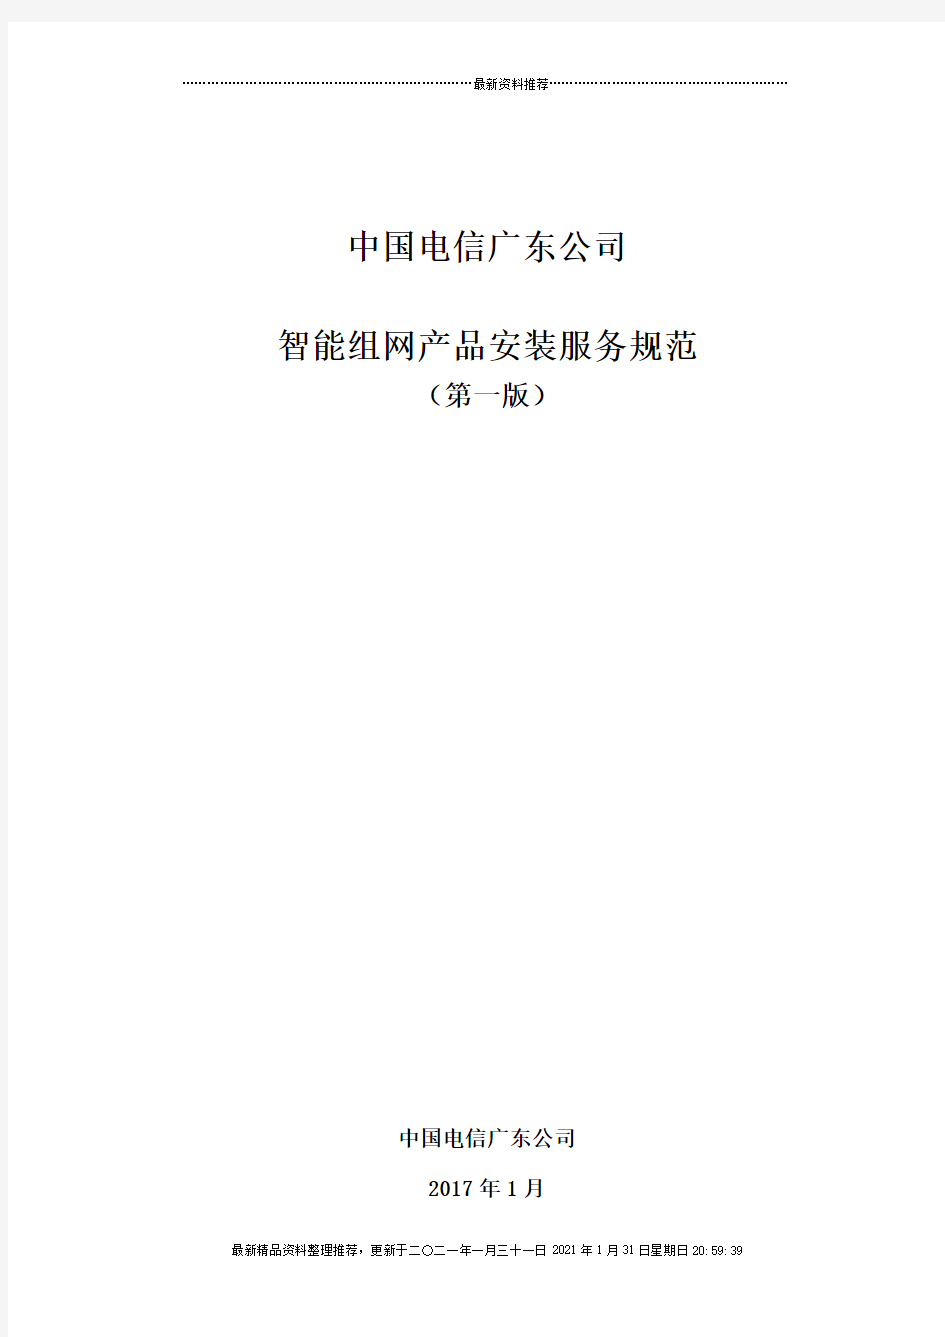 中国电信广东公司智能组网产品安装服务规范(V10)0